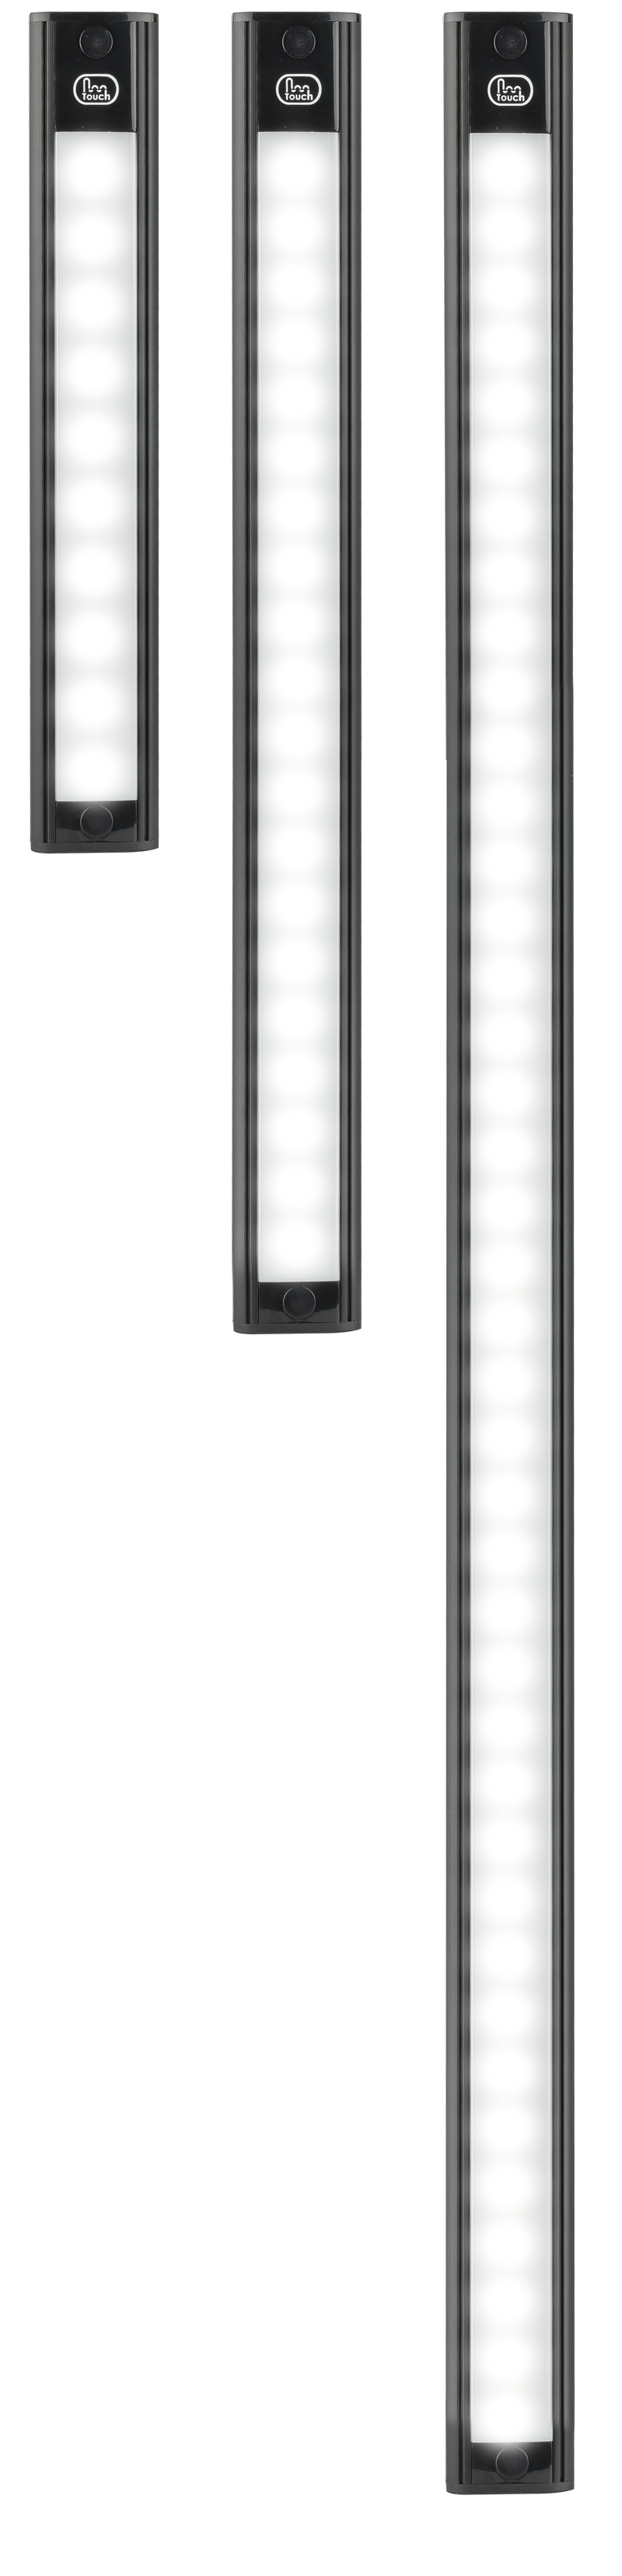 LED Autolamps 40260MCU